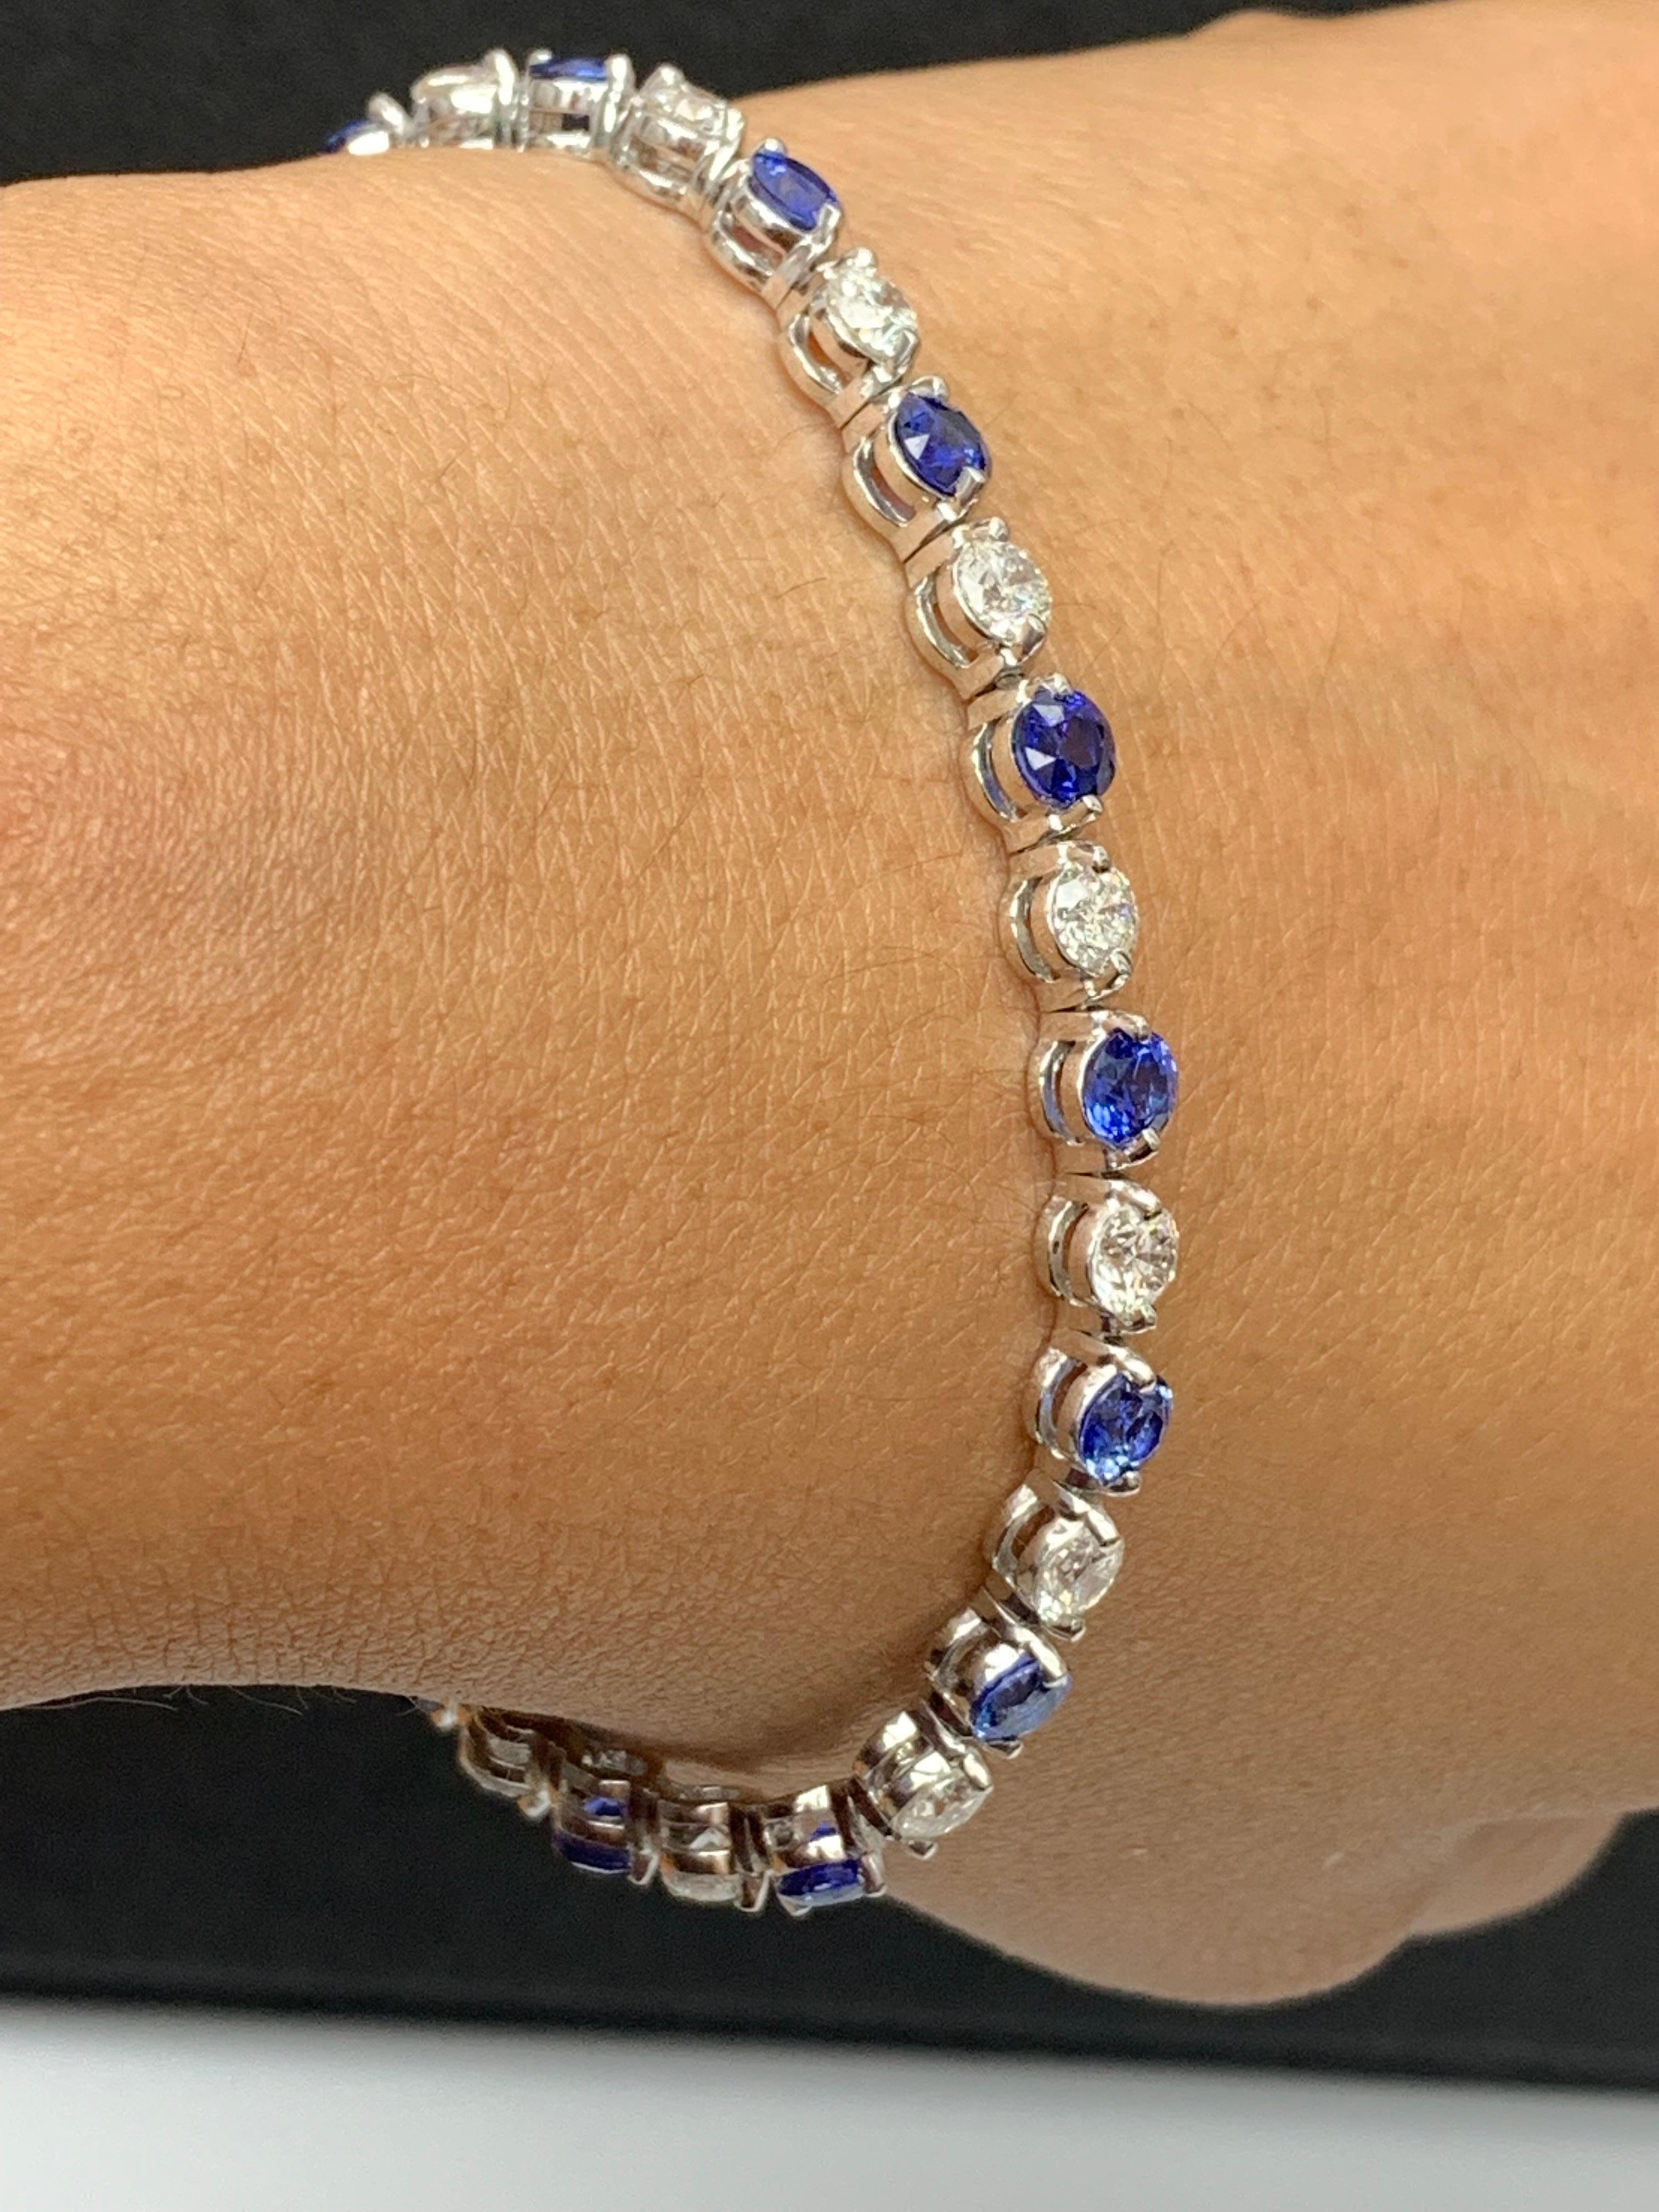 Un superbe bracelet serti de 16 saphirs bleus vibrants pesant 4.10 carats au total. En alternance avec ces saphirs bleus se trouvent 16 diamants ronds étincelants pesant 3,92 carats au total. Serti dans de l'or blanc 14k poli. Double mécanisme de